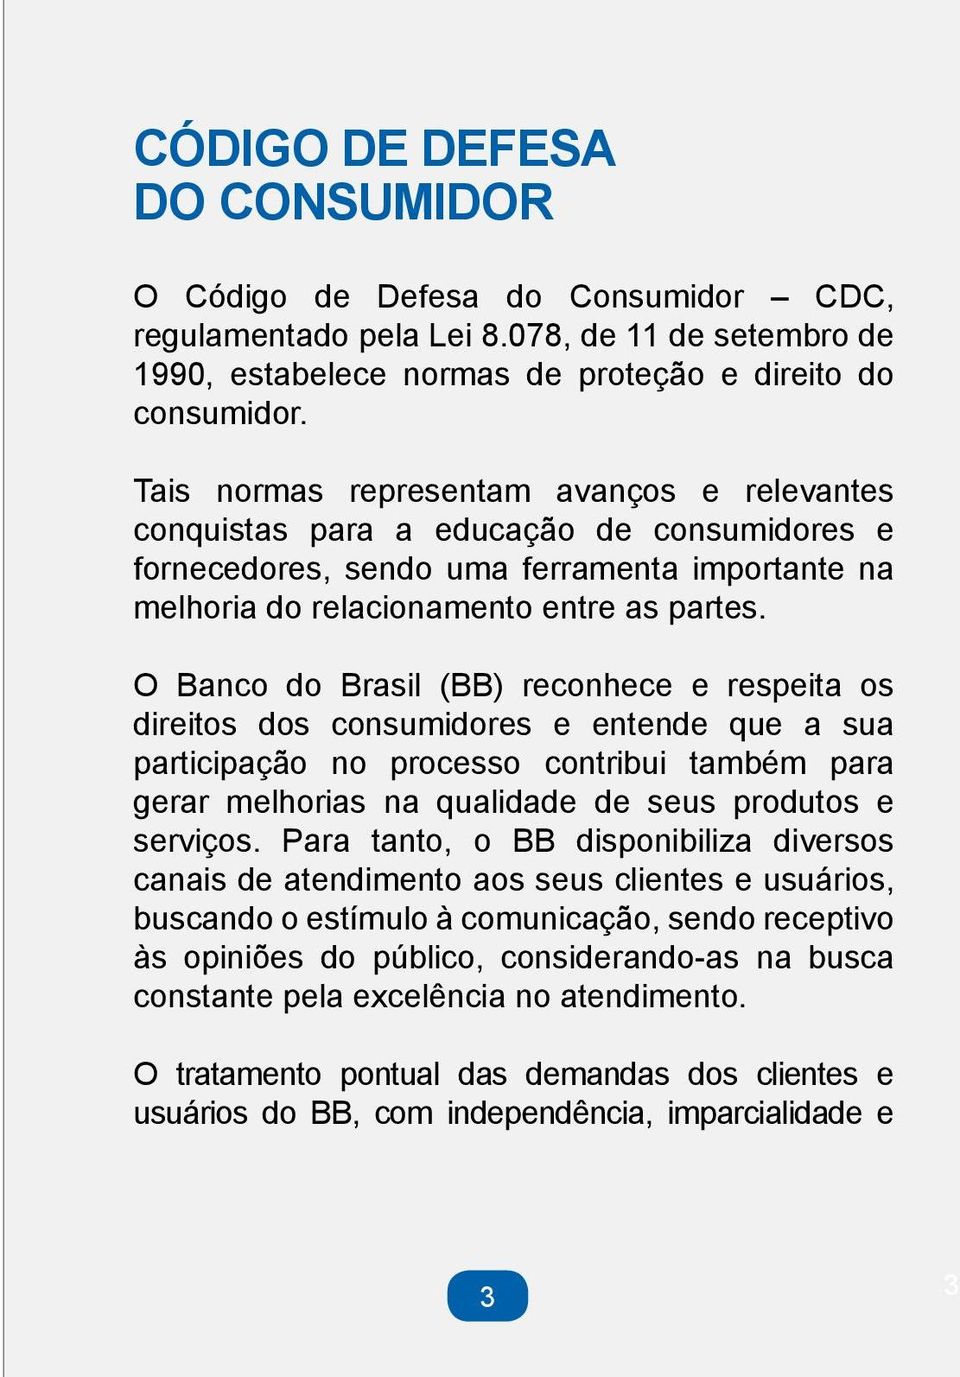 O Banco do Brasil (BB) reconhece e respeita os direitos dos consumidores e entende que a sua participação no processo contribui também para gerar melhorias na qualidade de seus produtos e serviços.